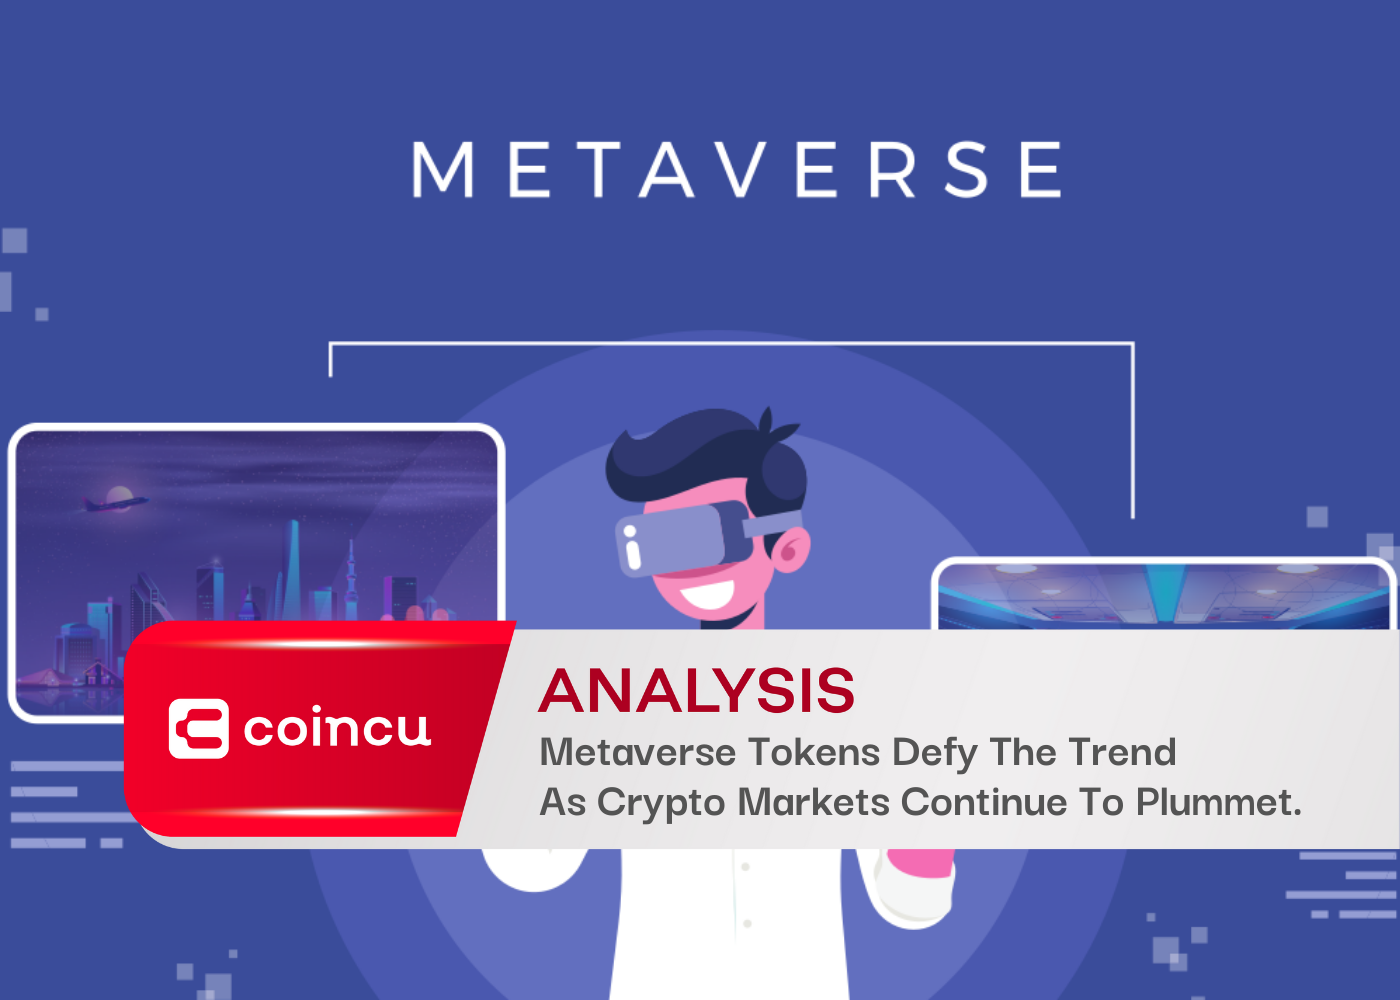 Токены Metaverse бросают вызов этой тенденции, поскольку рынки криптовалют продолжают падать.